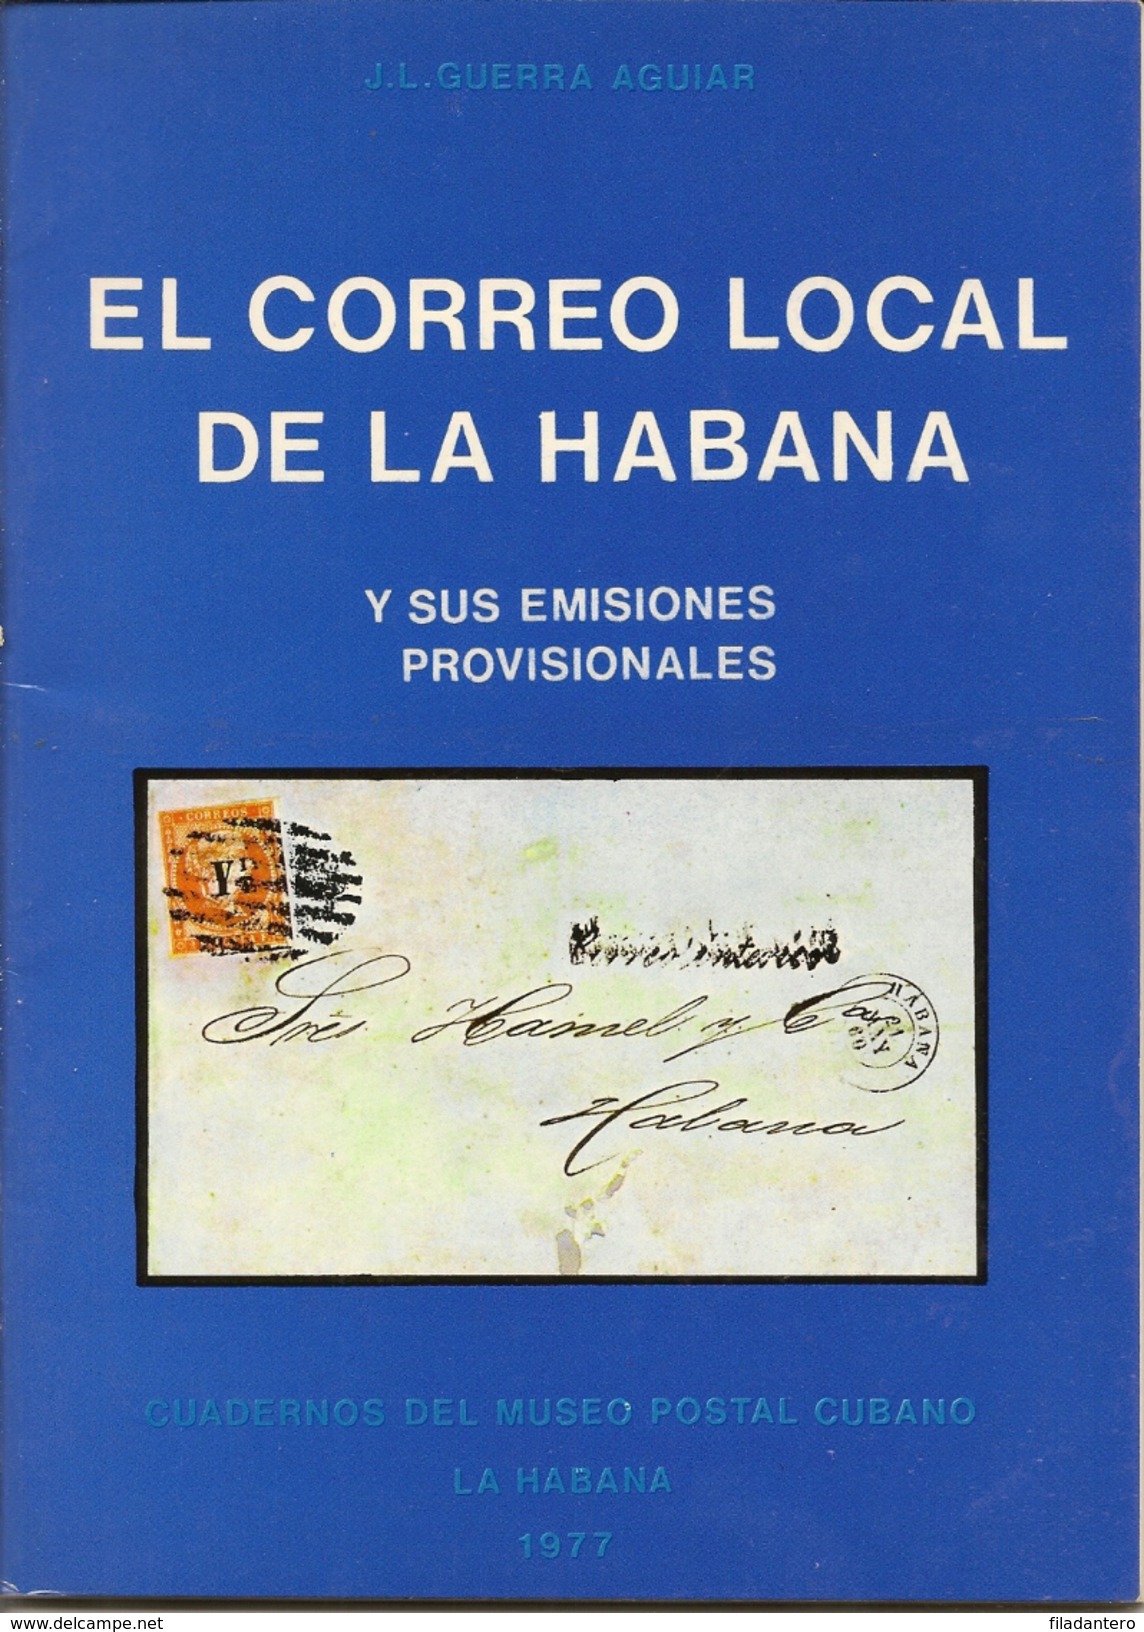 Obra Filatélica " El Correo Local De La Habana"  1977  J.L. Guerra Aguiar - Tematica